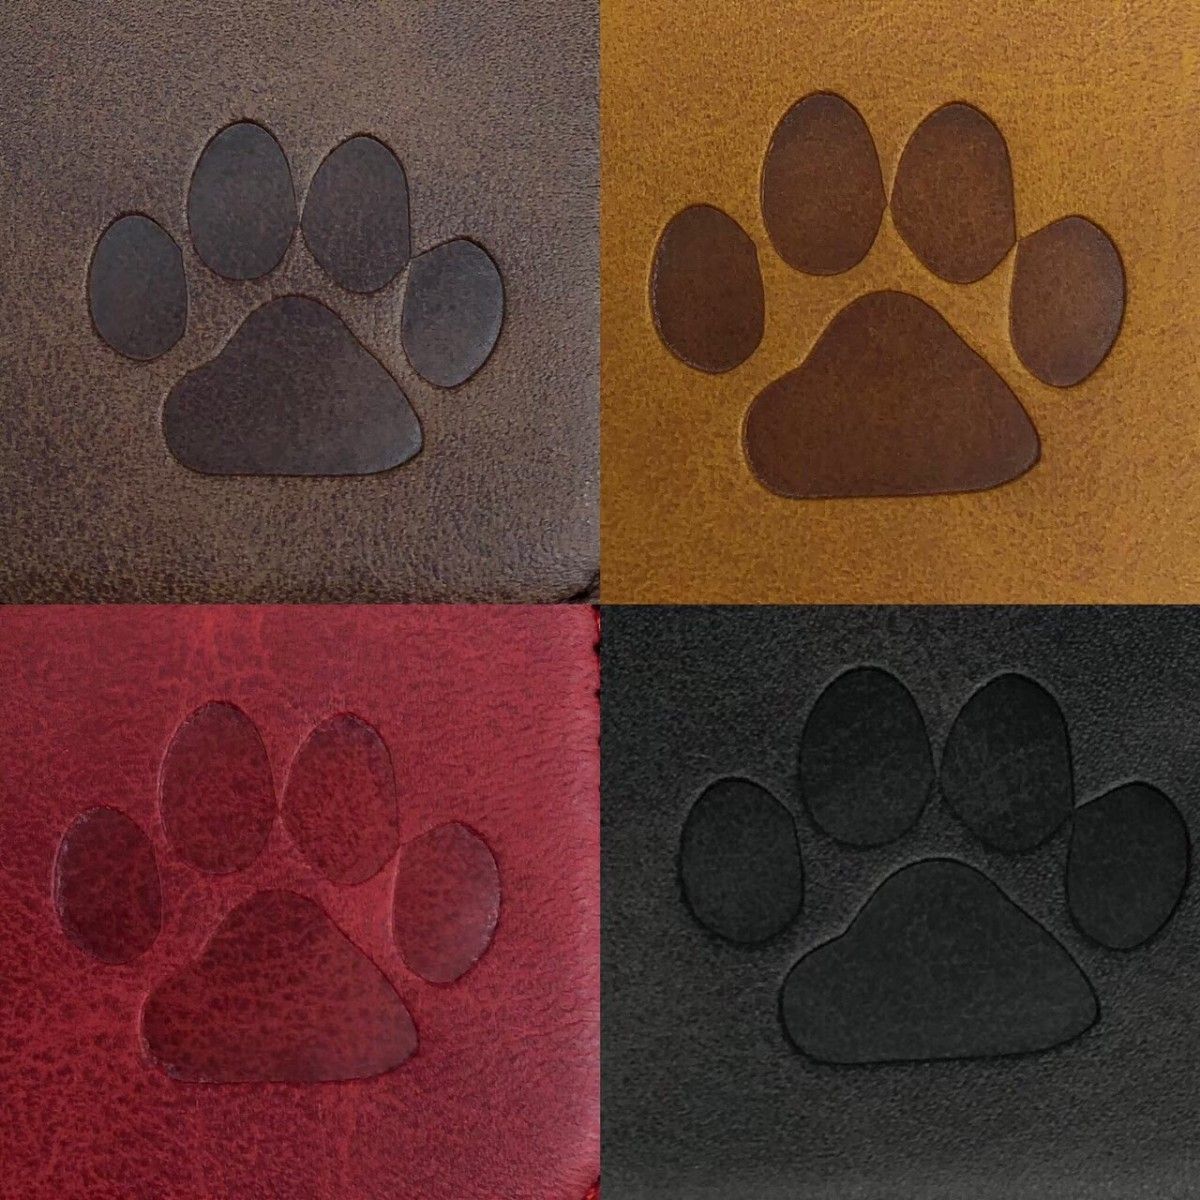 iPhoneケース   対応機種多数   カラー全4色  肉球レザーケース   新品   犬   猫   動物   プレゼント  